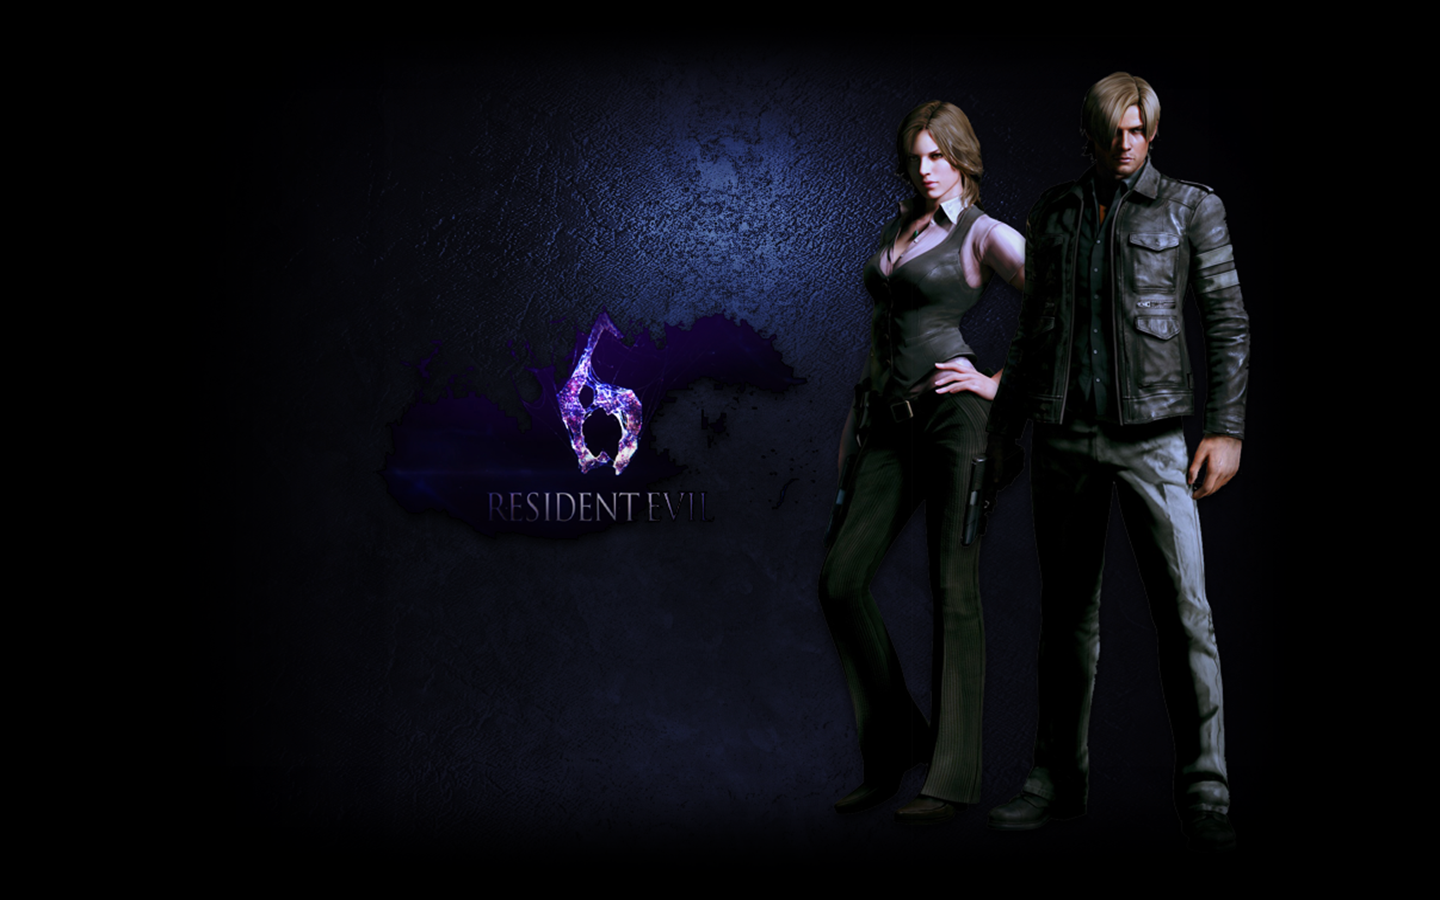 Resident Evil Wallpaper 1080p